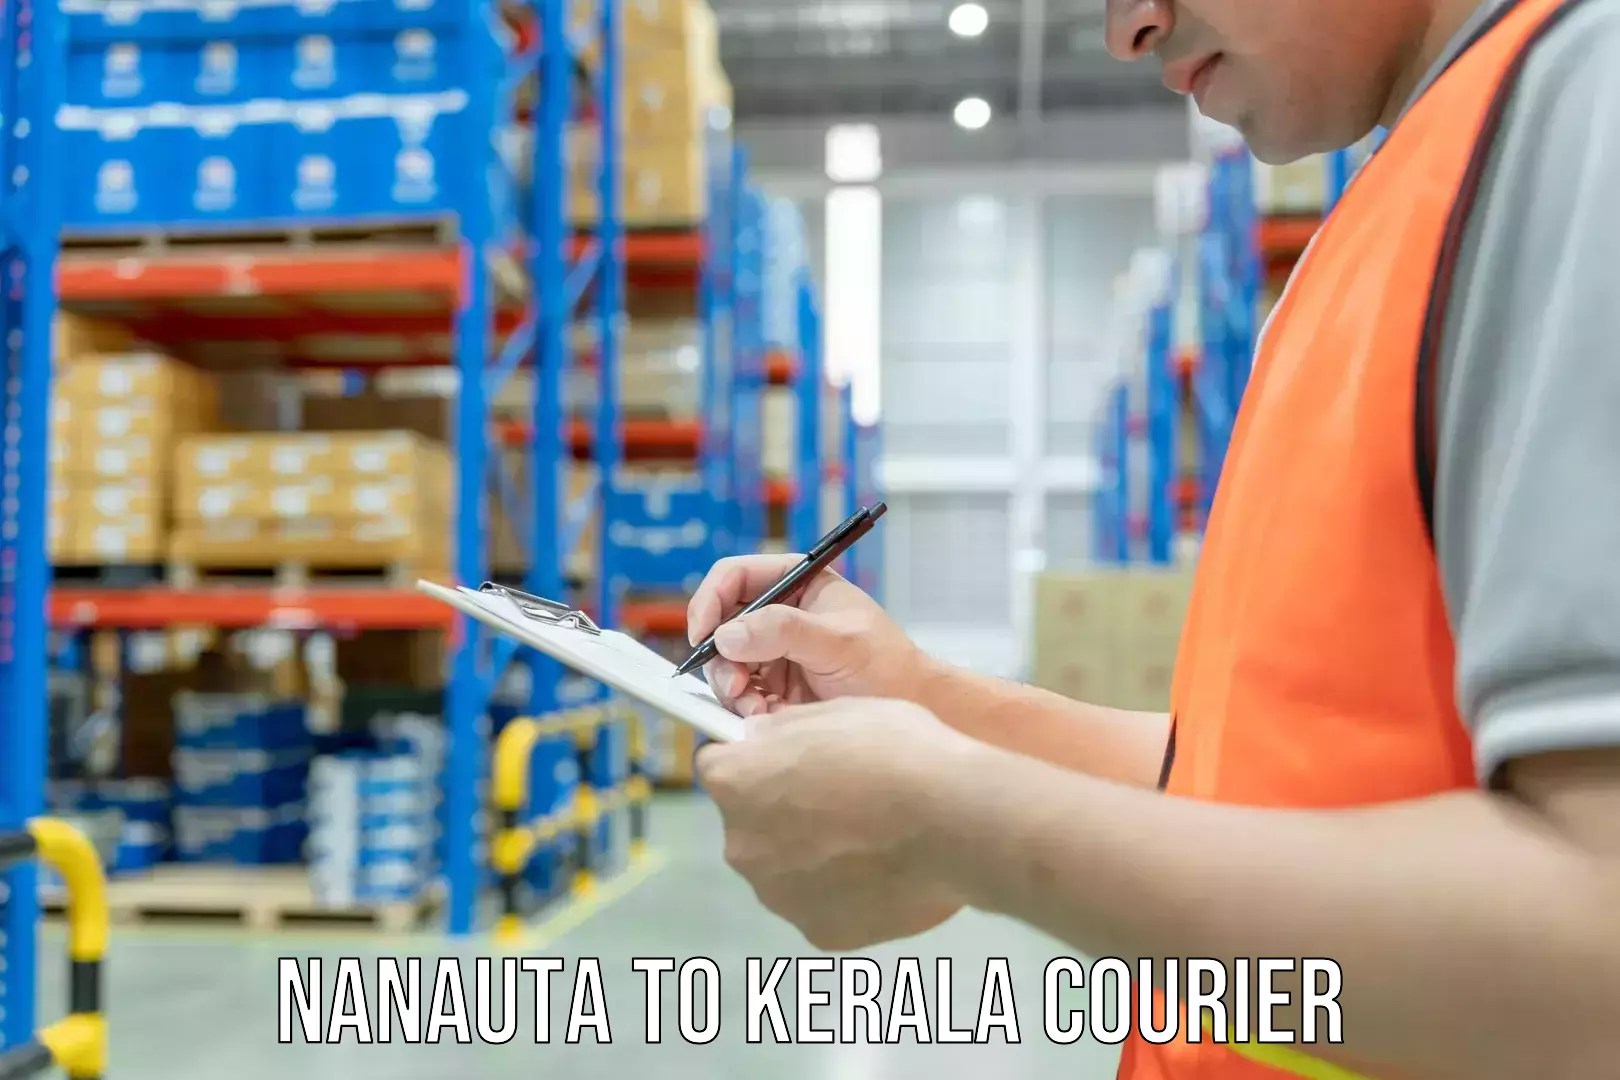 Home goods movers in Nanauta to Kerala